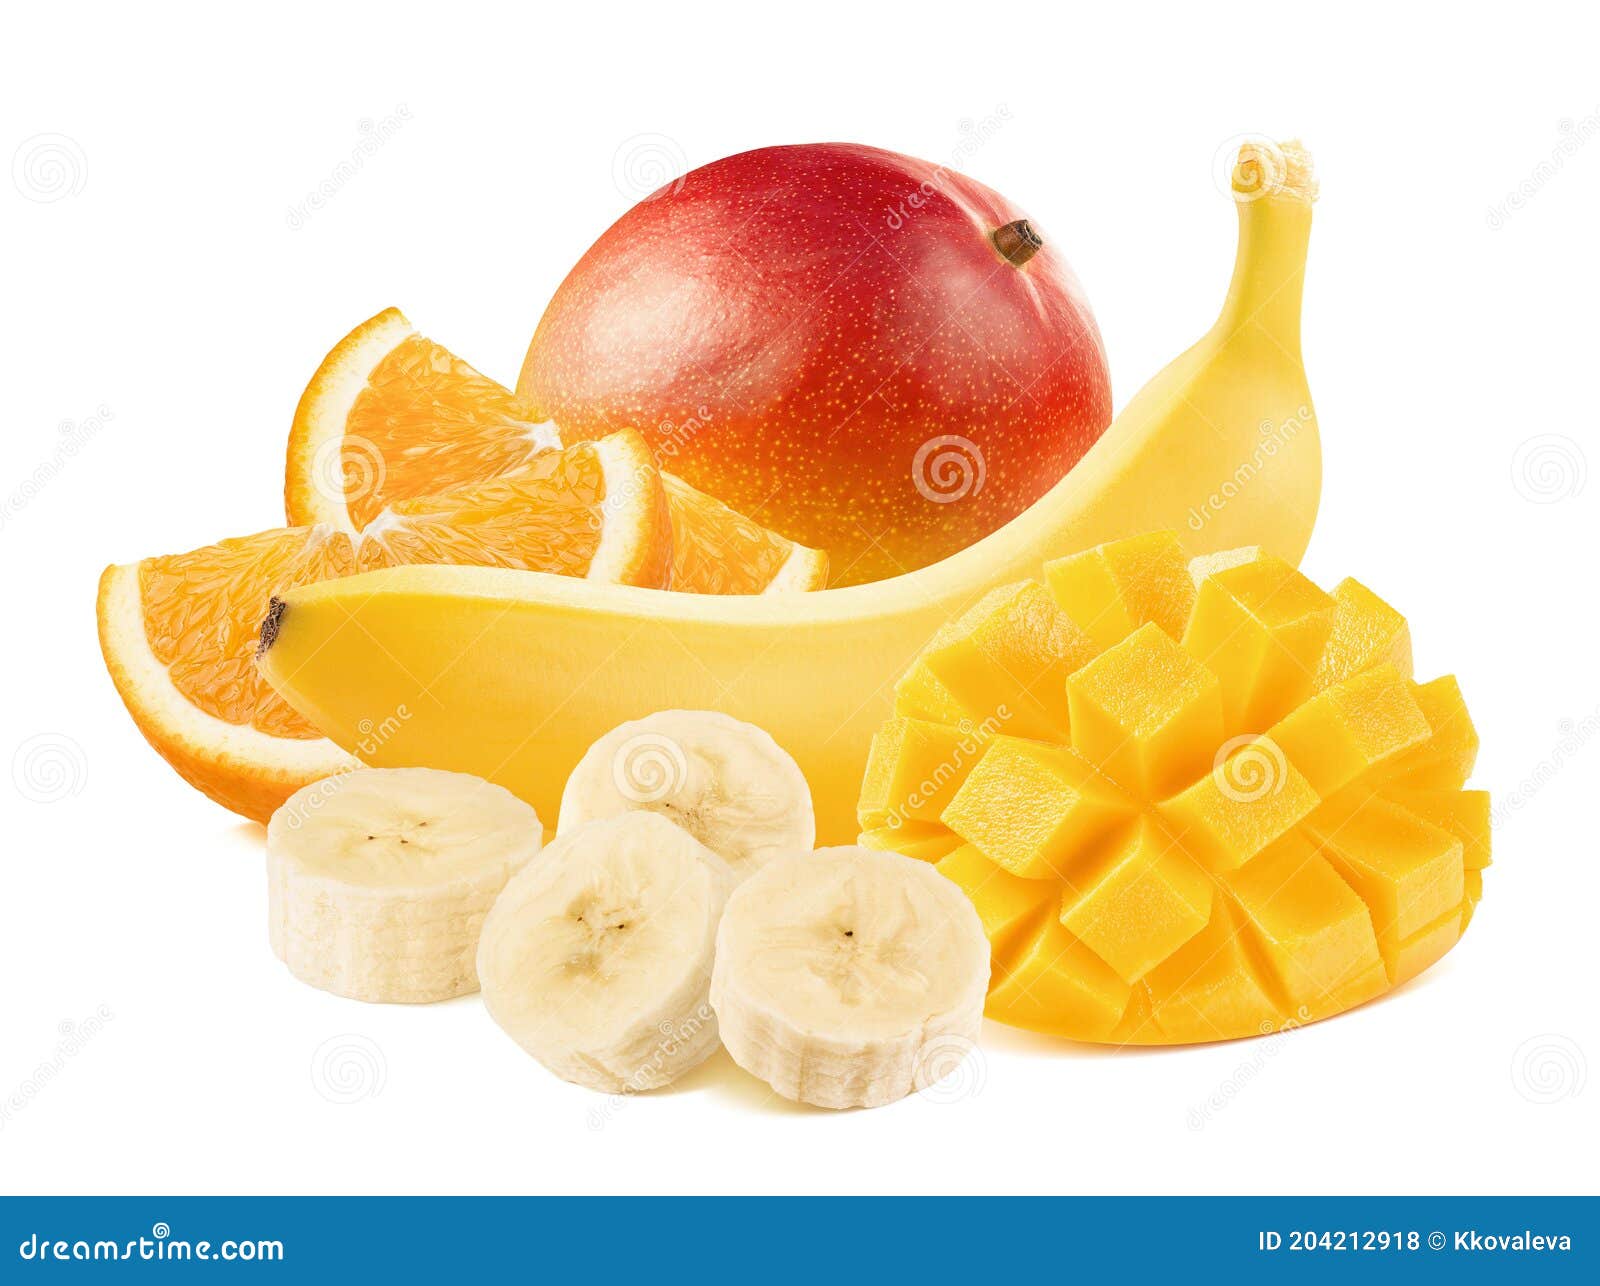 Orange Mango Whole And Sliced Banana Isolated On White Background